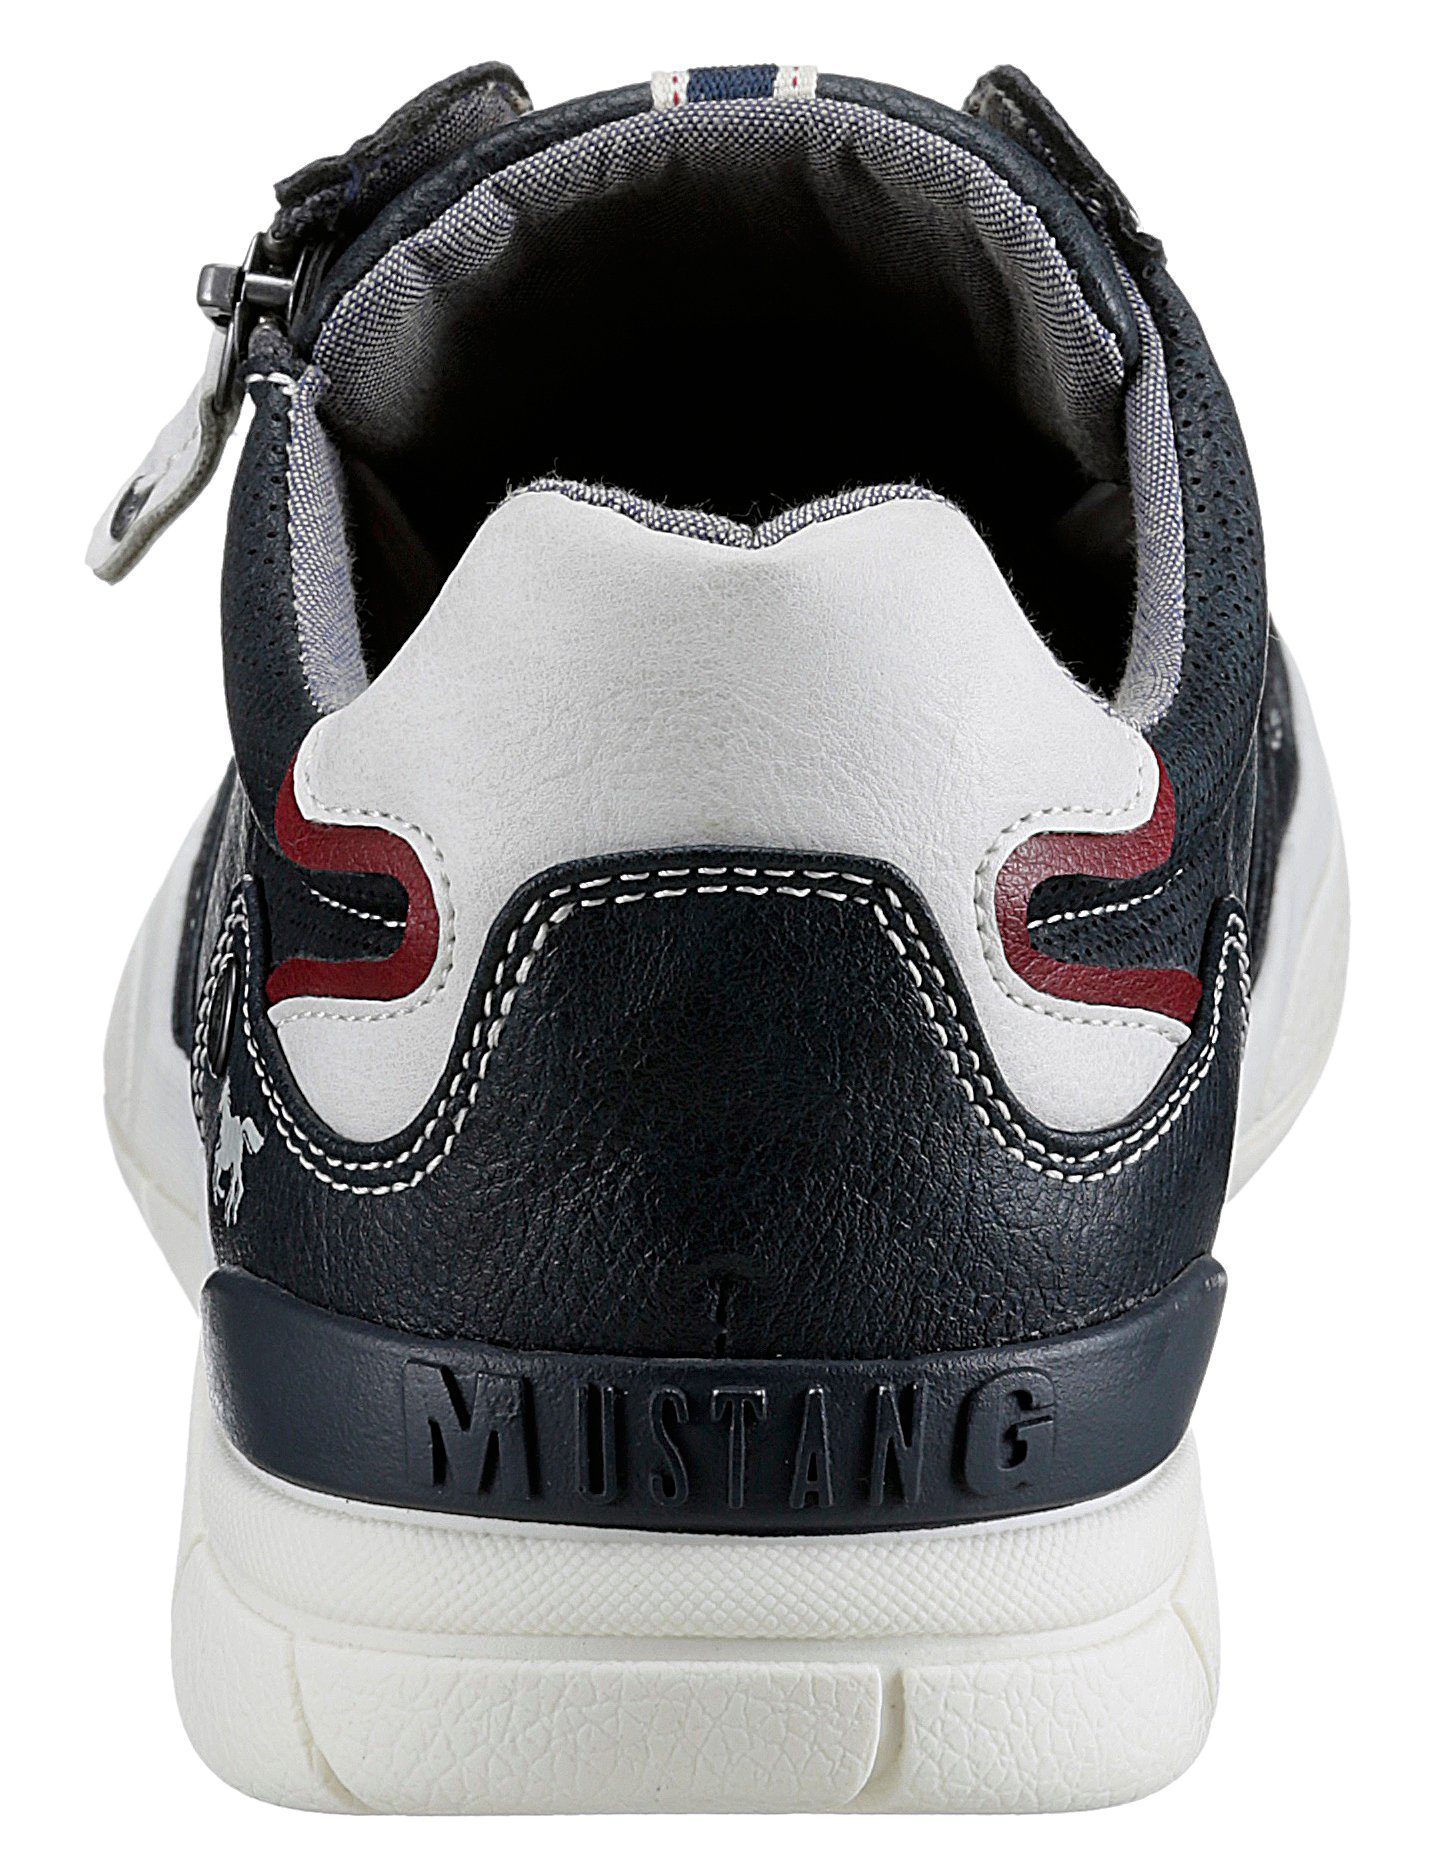 Mustang Shoes Sneaker Reißverschluss mit navy-offwhite seitlichem